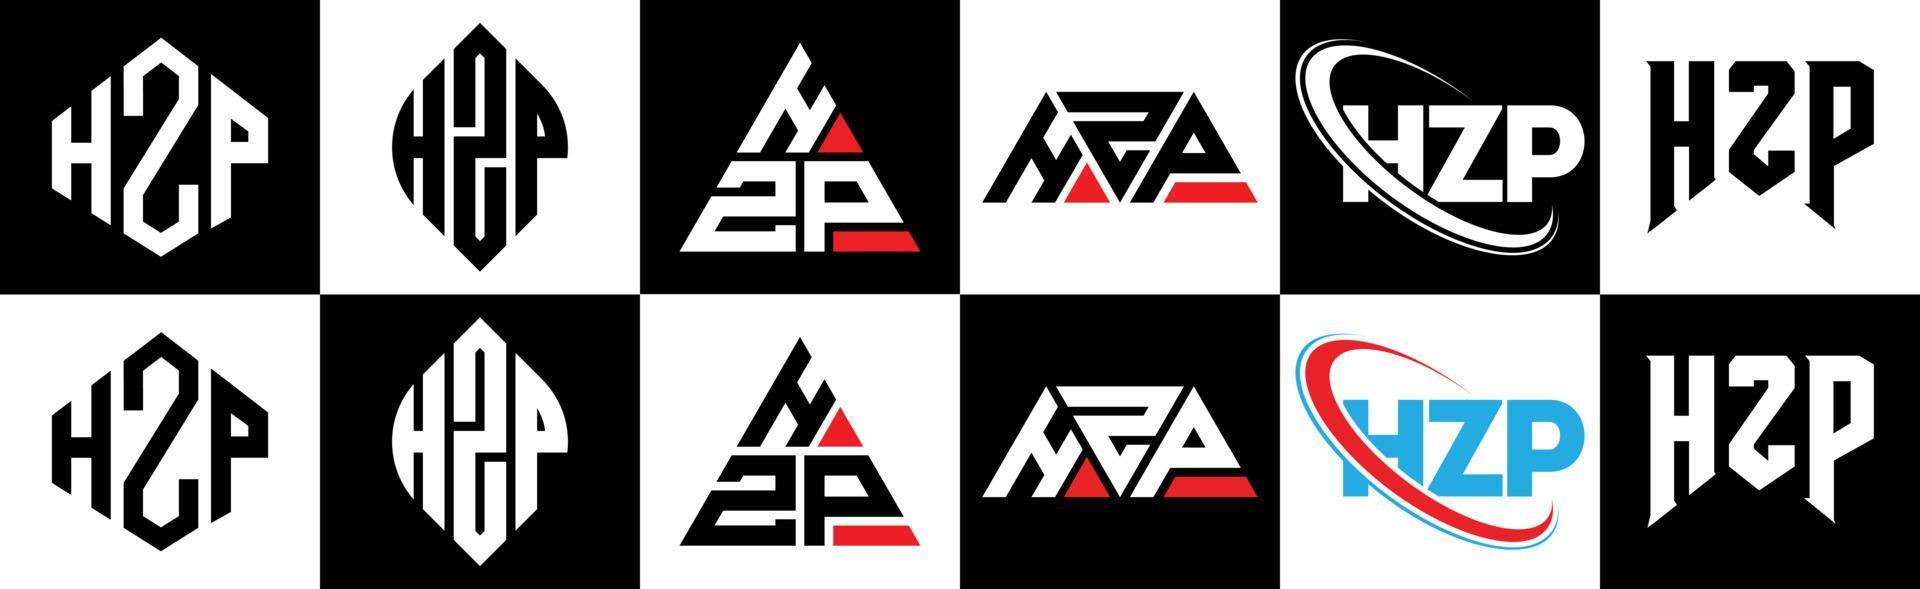 hzp-Buchstaben-Logo-Design in sechs Stilen. hzp polygon, kreis, dreieck, sechseck, flacher und einfacher stil mit schwarz-weißem buchstabenlogo in einer zeichenfläche. hzp minimalistisches und klassisches Logo vektor